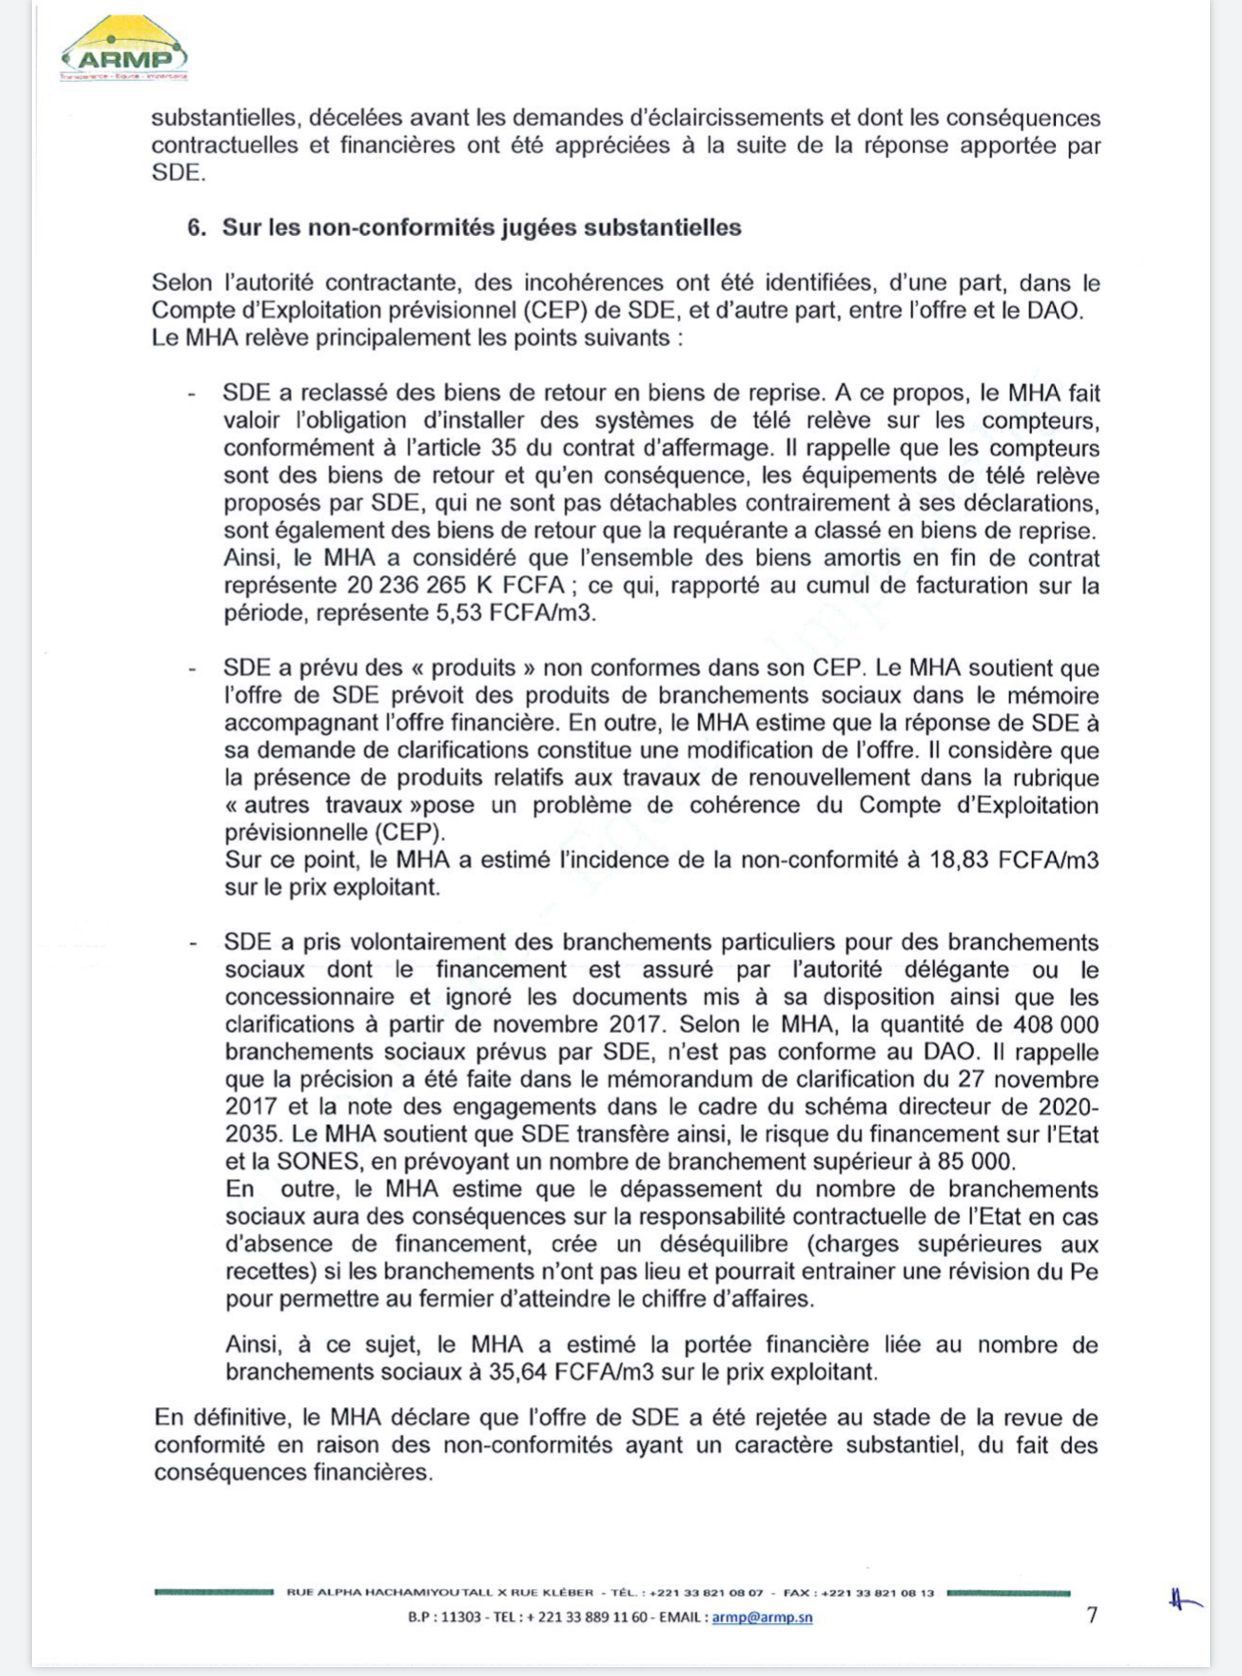 L’Armp annule l’attribution provisoire du contrat d’affermage à SUEZ et relance la SDE